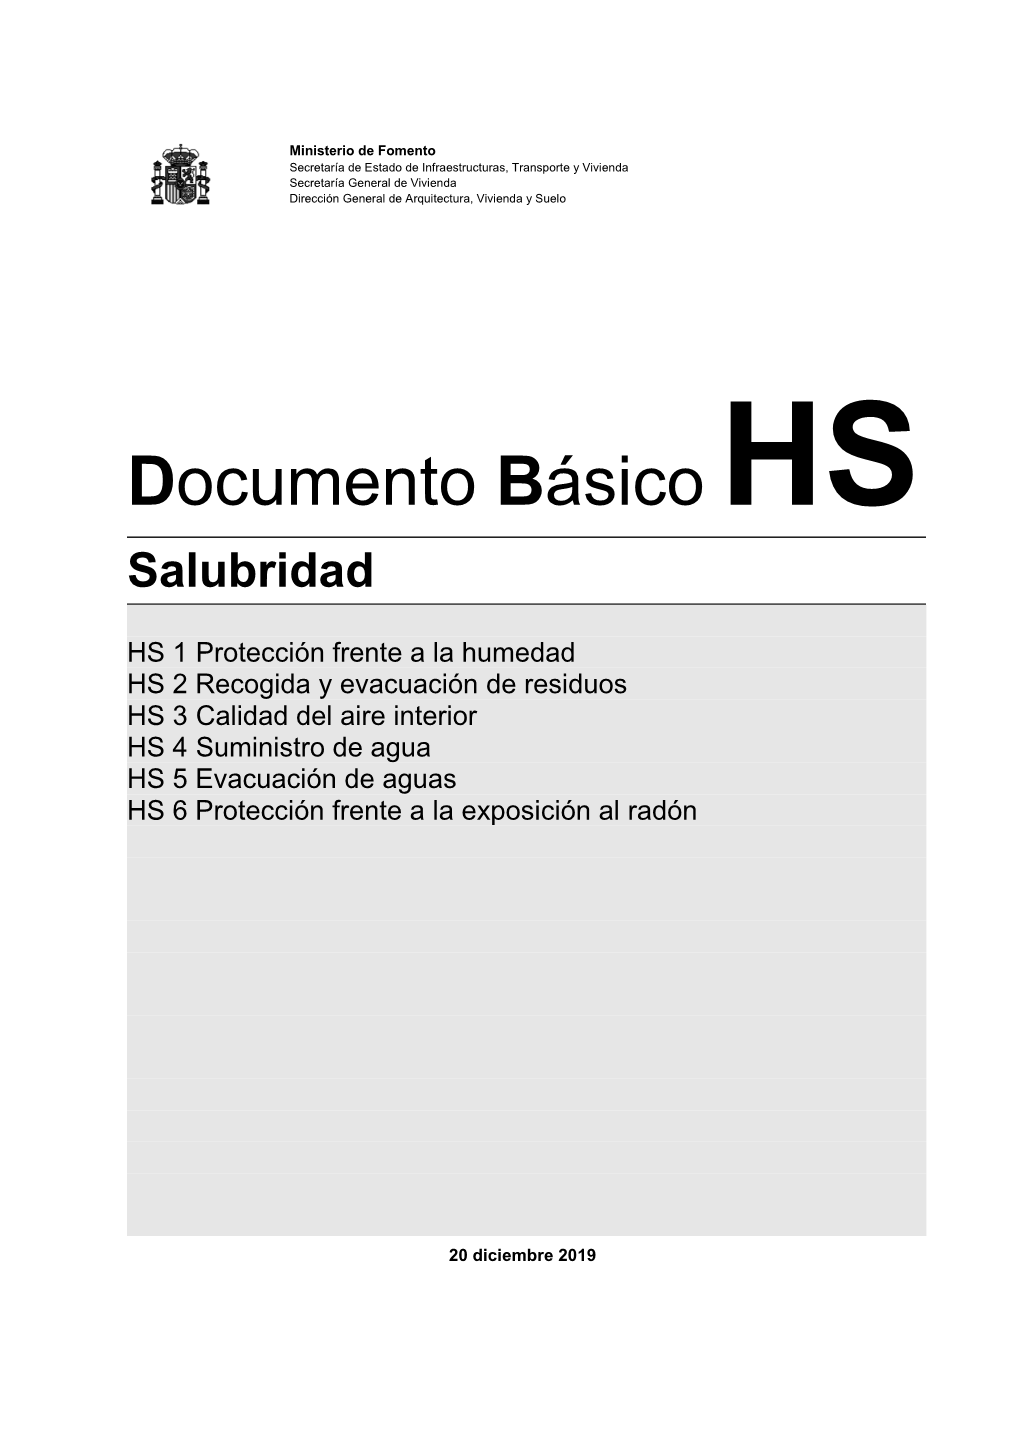 Documento Básico, Salubridad, HS-5